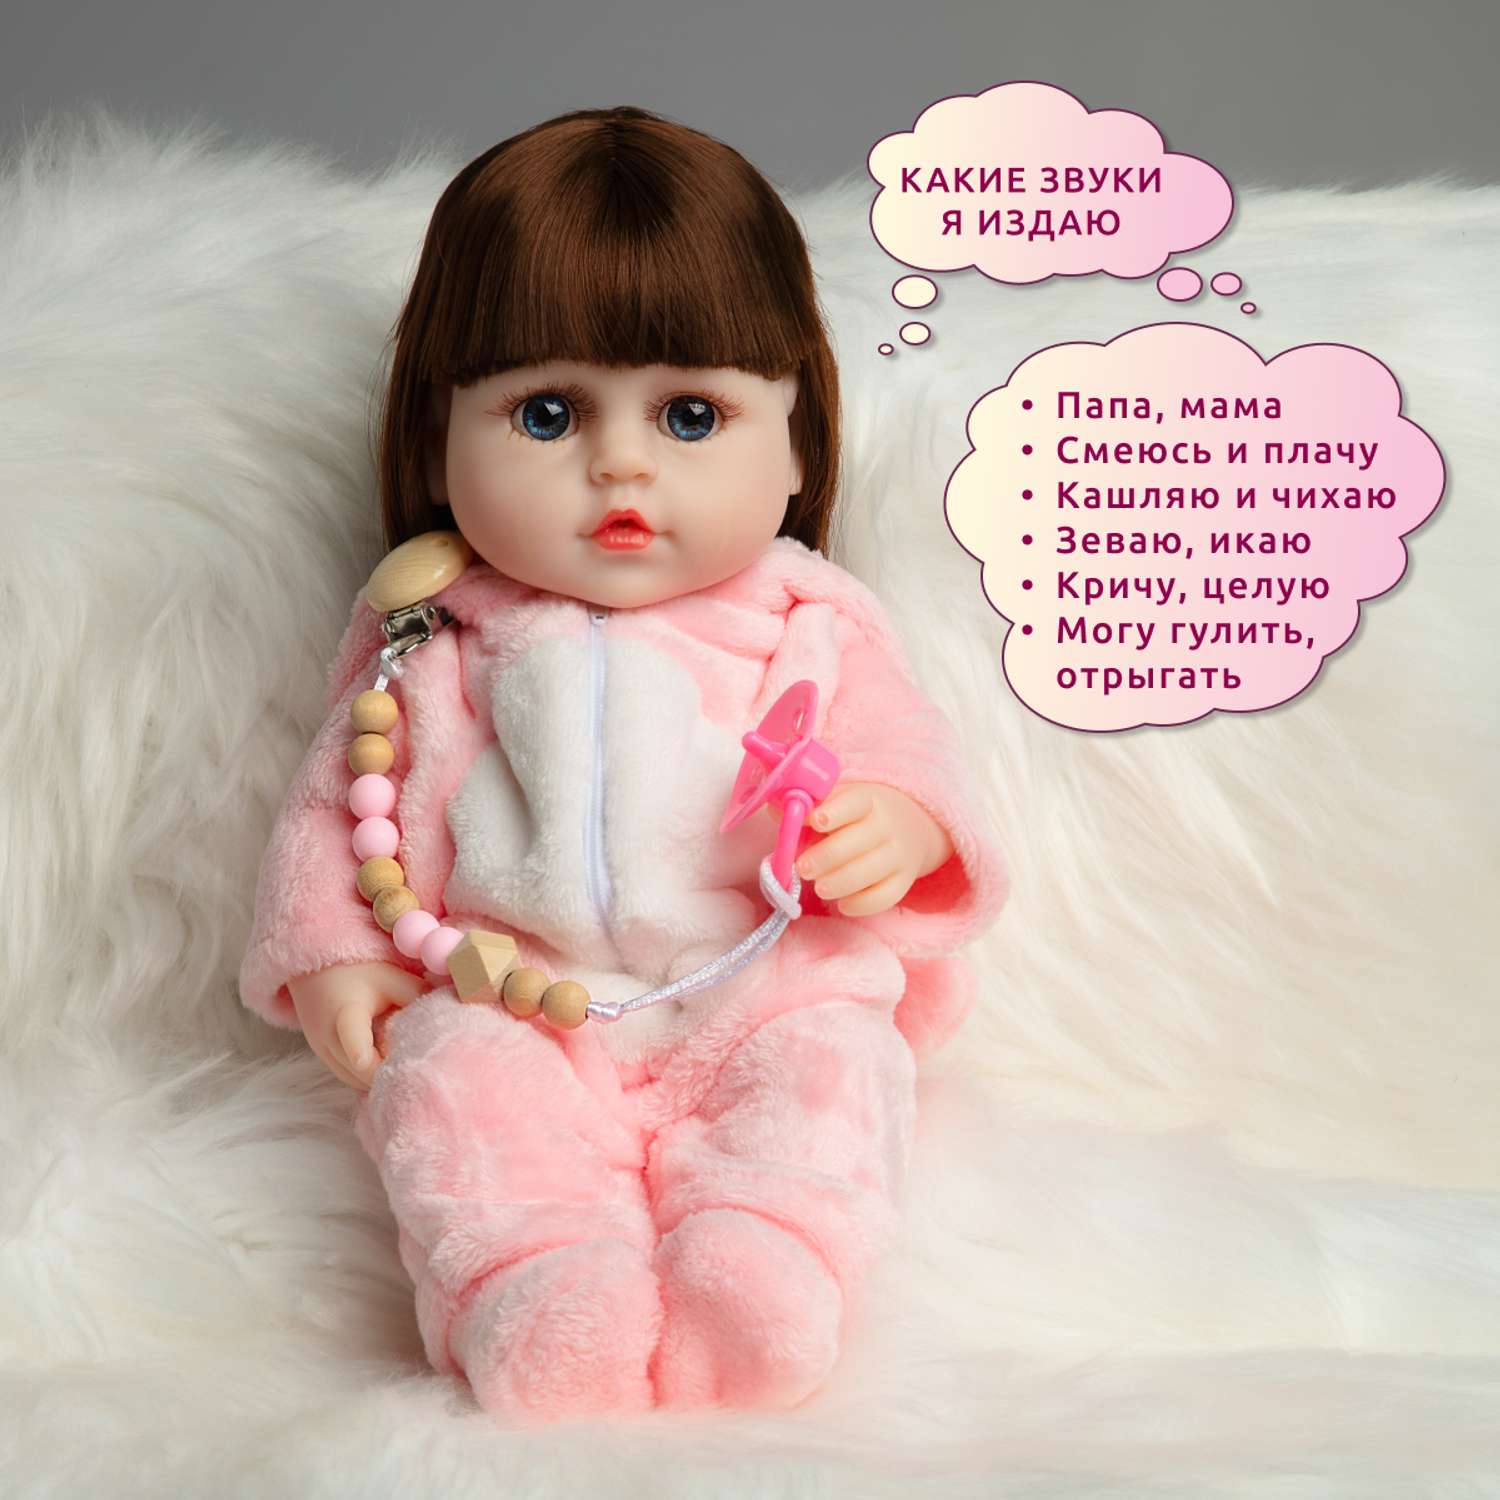 Кукла Реборн QA BABY Элен девочка интерактивная Пупс набор игрушки для ванной для девочки 38 см 3810 - фото 3